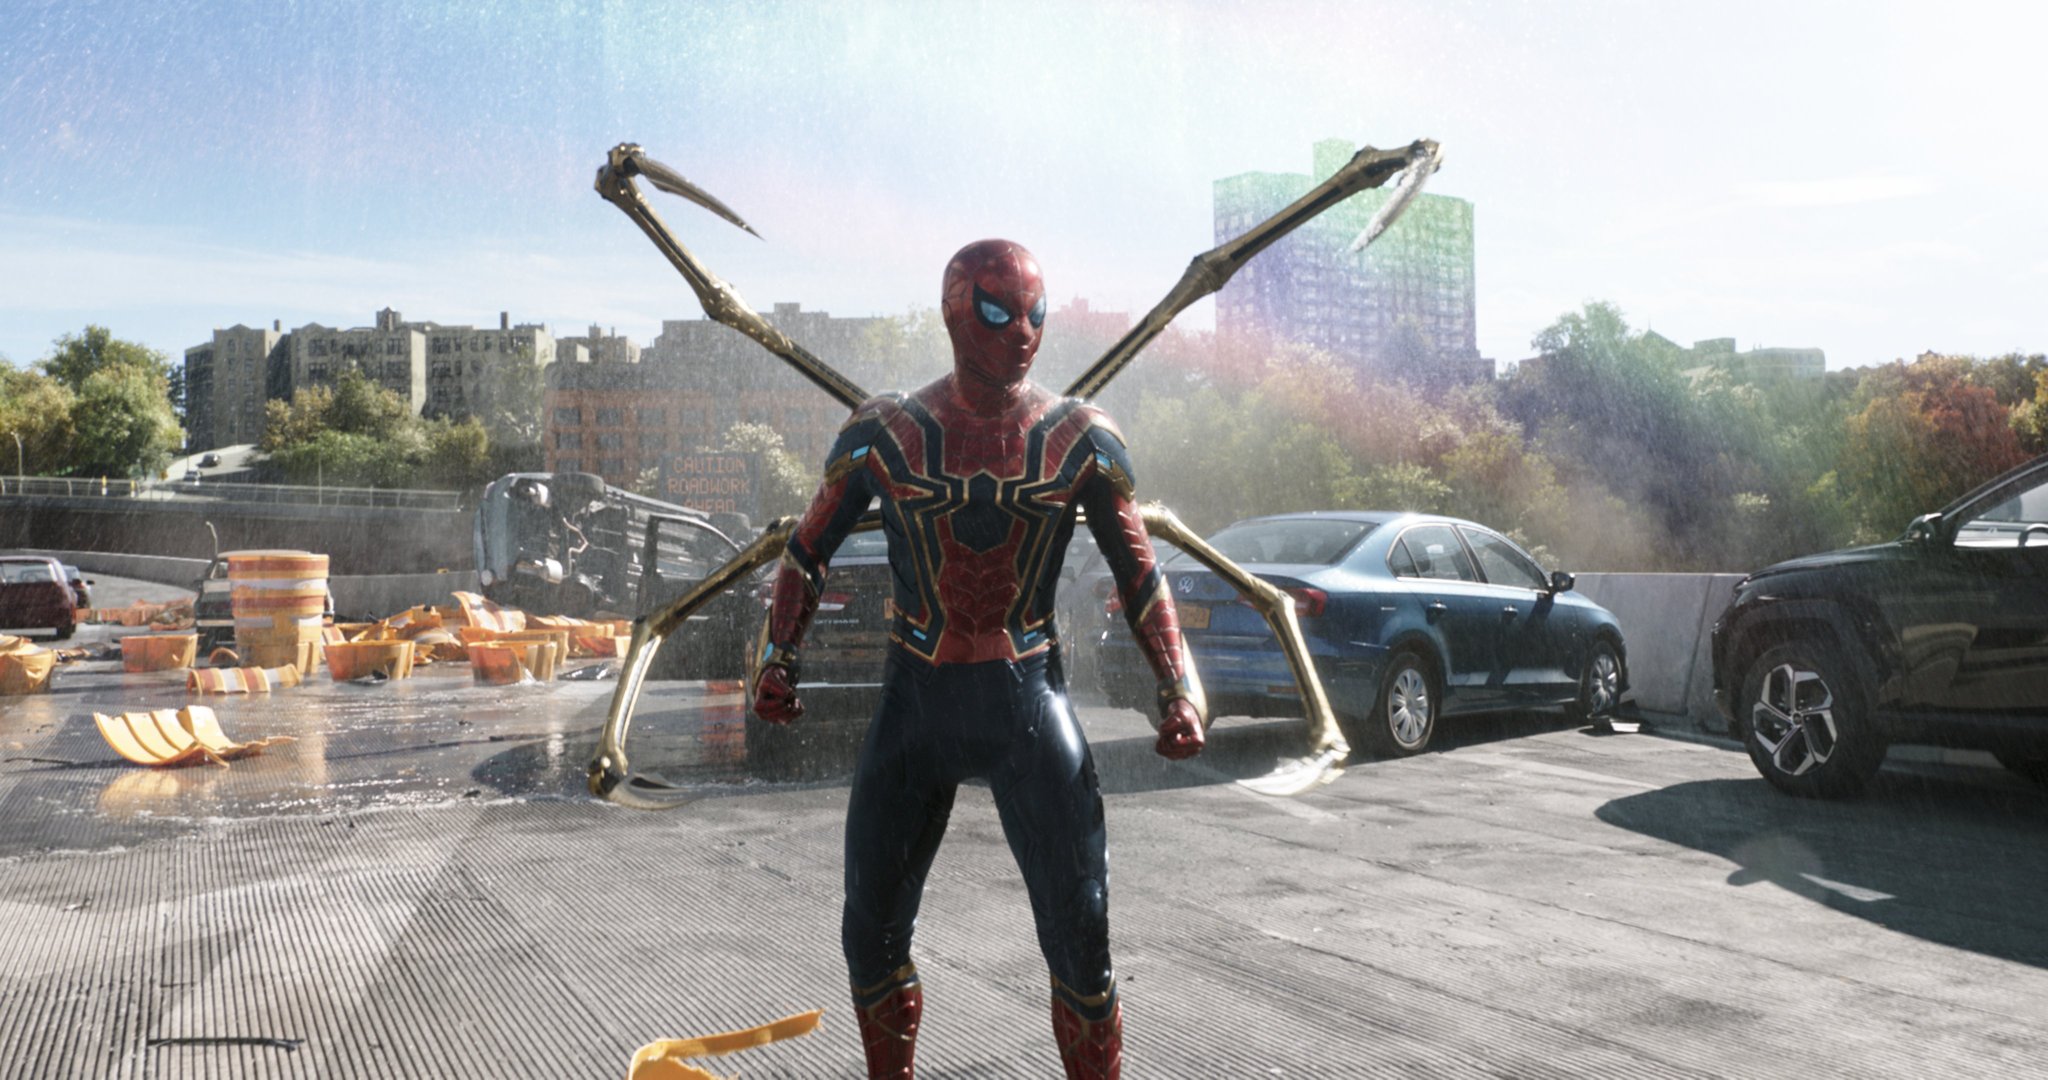 Ο απόλυτος χαμός στο πρώτο τρέιλερ για το Spider-Man: No Way Home – ΒΙΝΤΕΟ